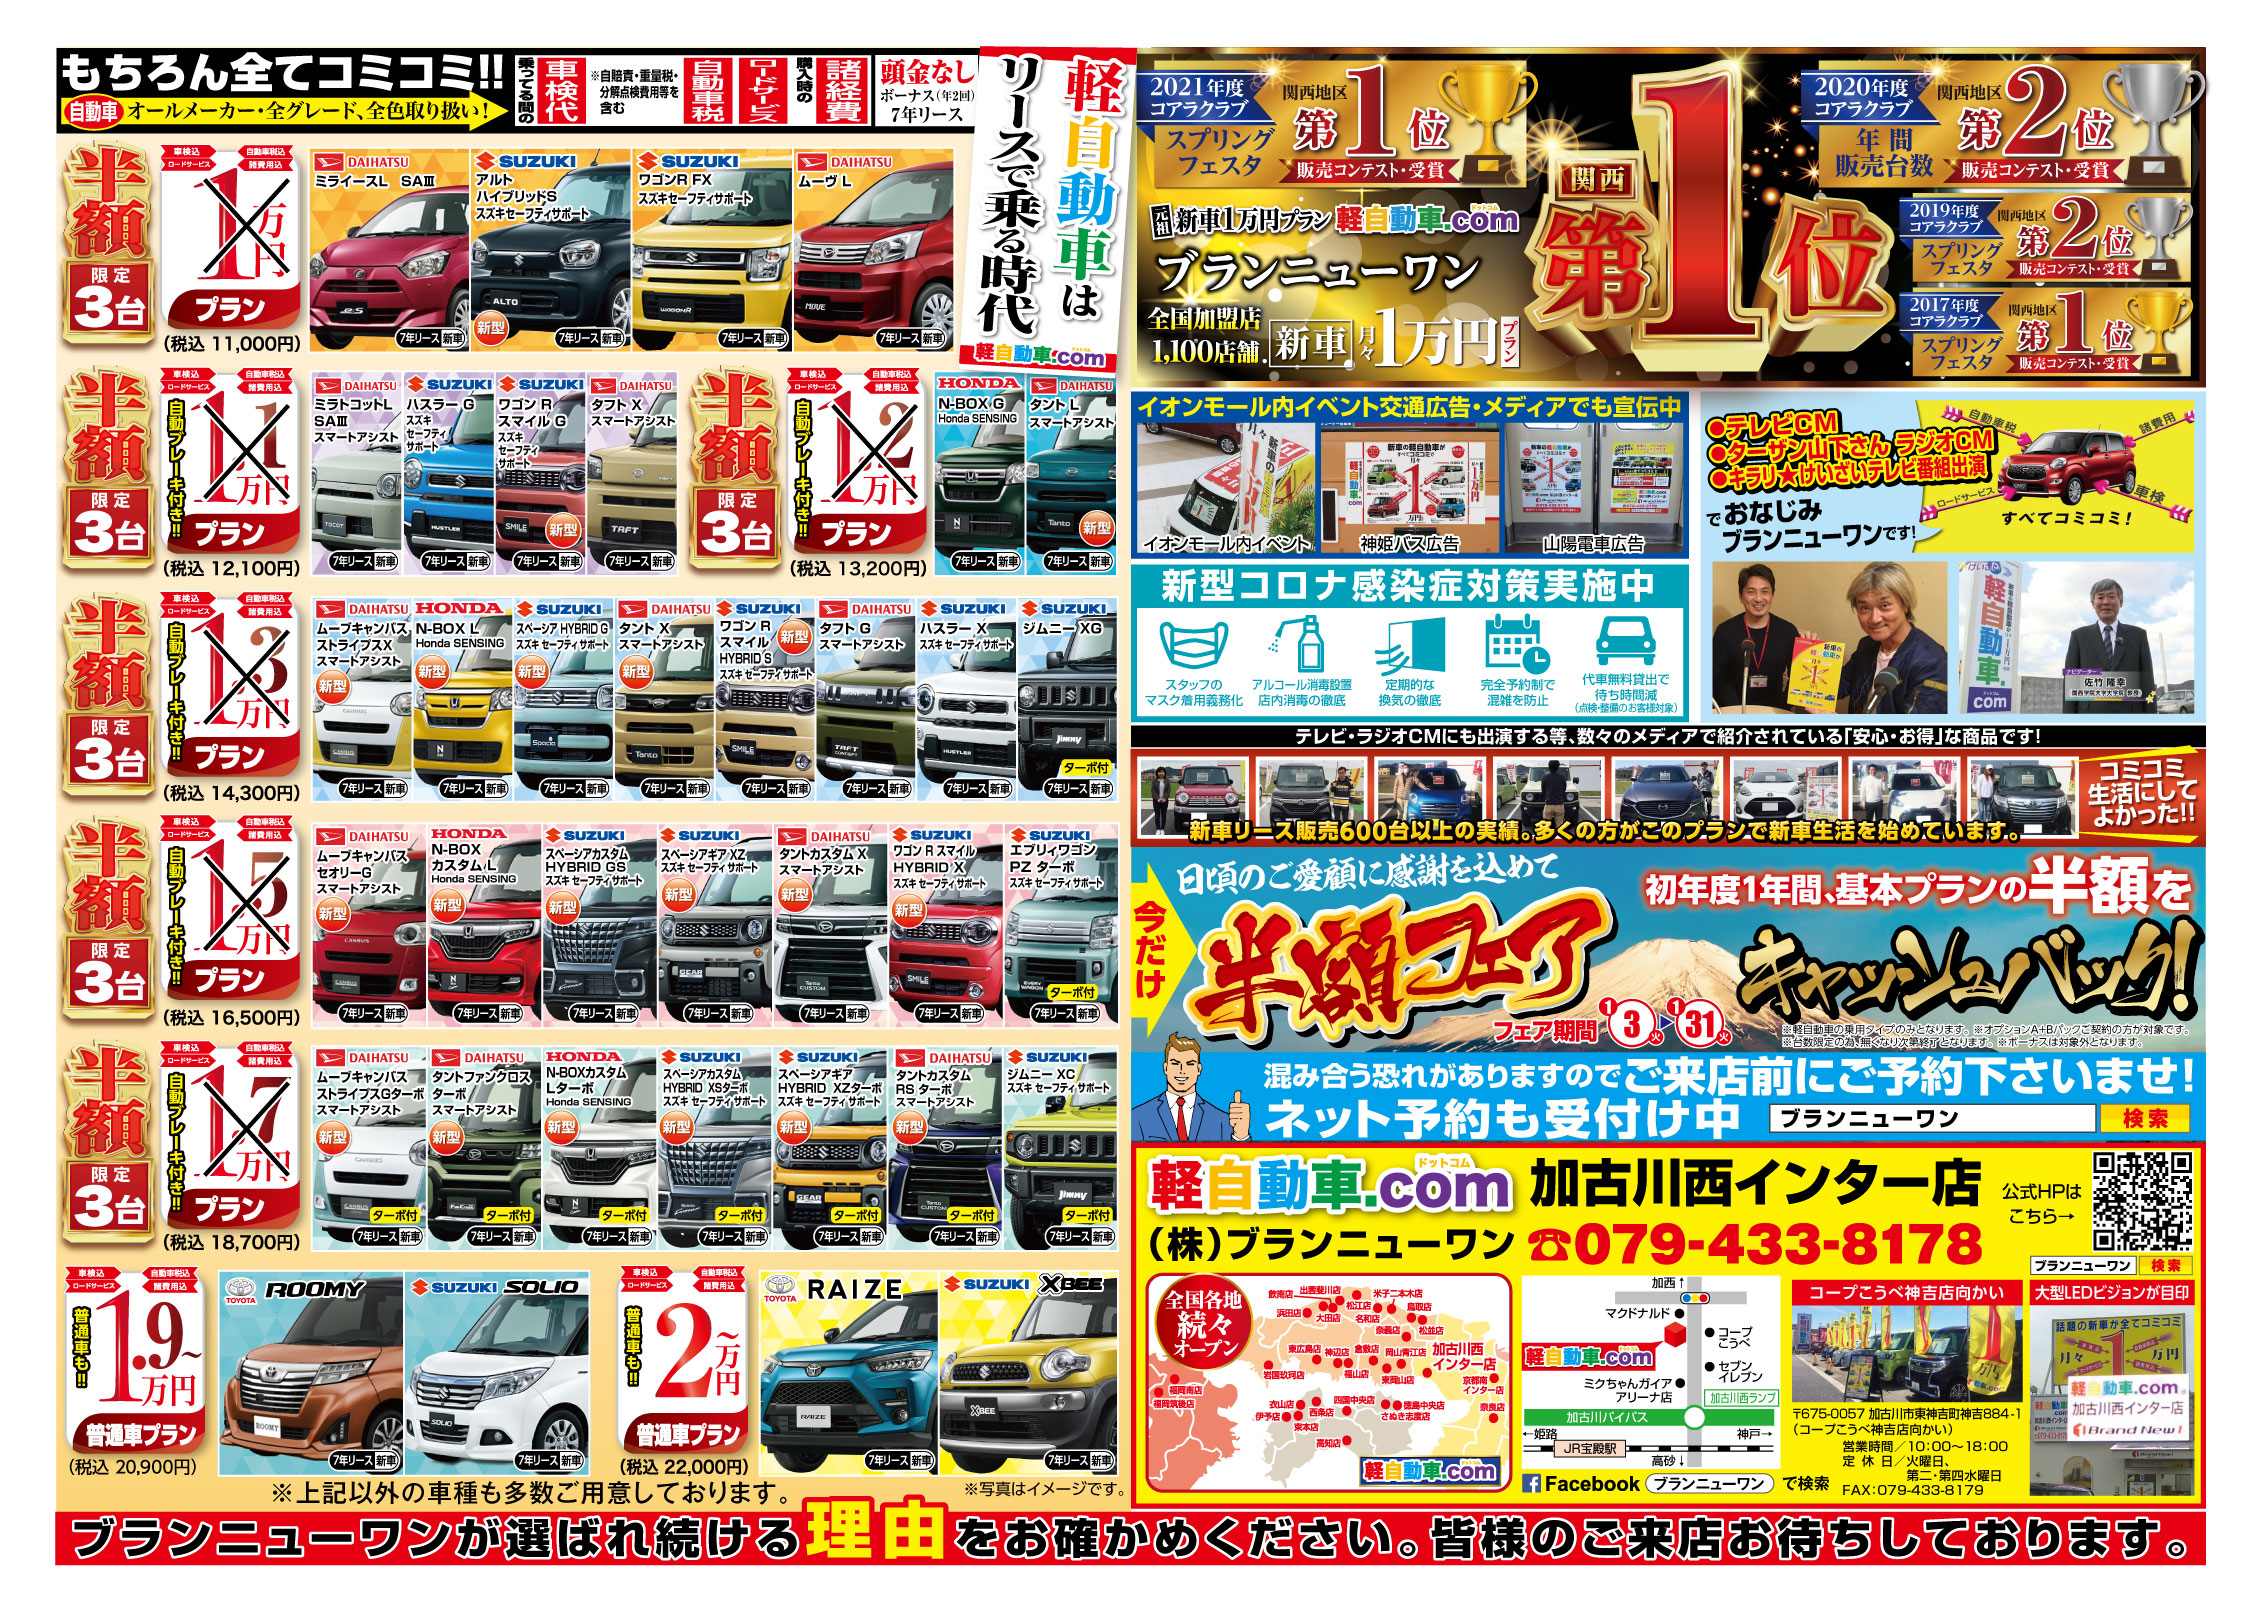 新車はリースの時代へ！加古川・高砂・姫路でカーリースといえば、株式会社ブランニューワン　軽自動車 .com。新車のカーリース、軽四のカーリース、軽自動車のカーリース。最新のチラシ情報